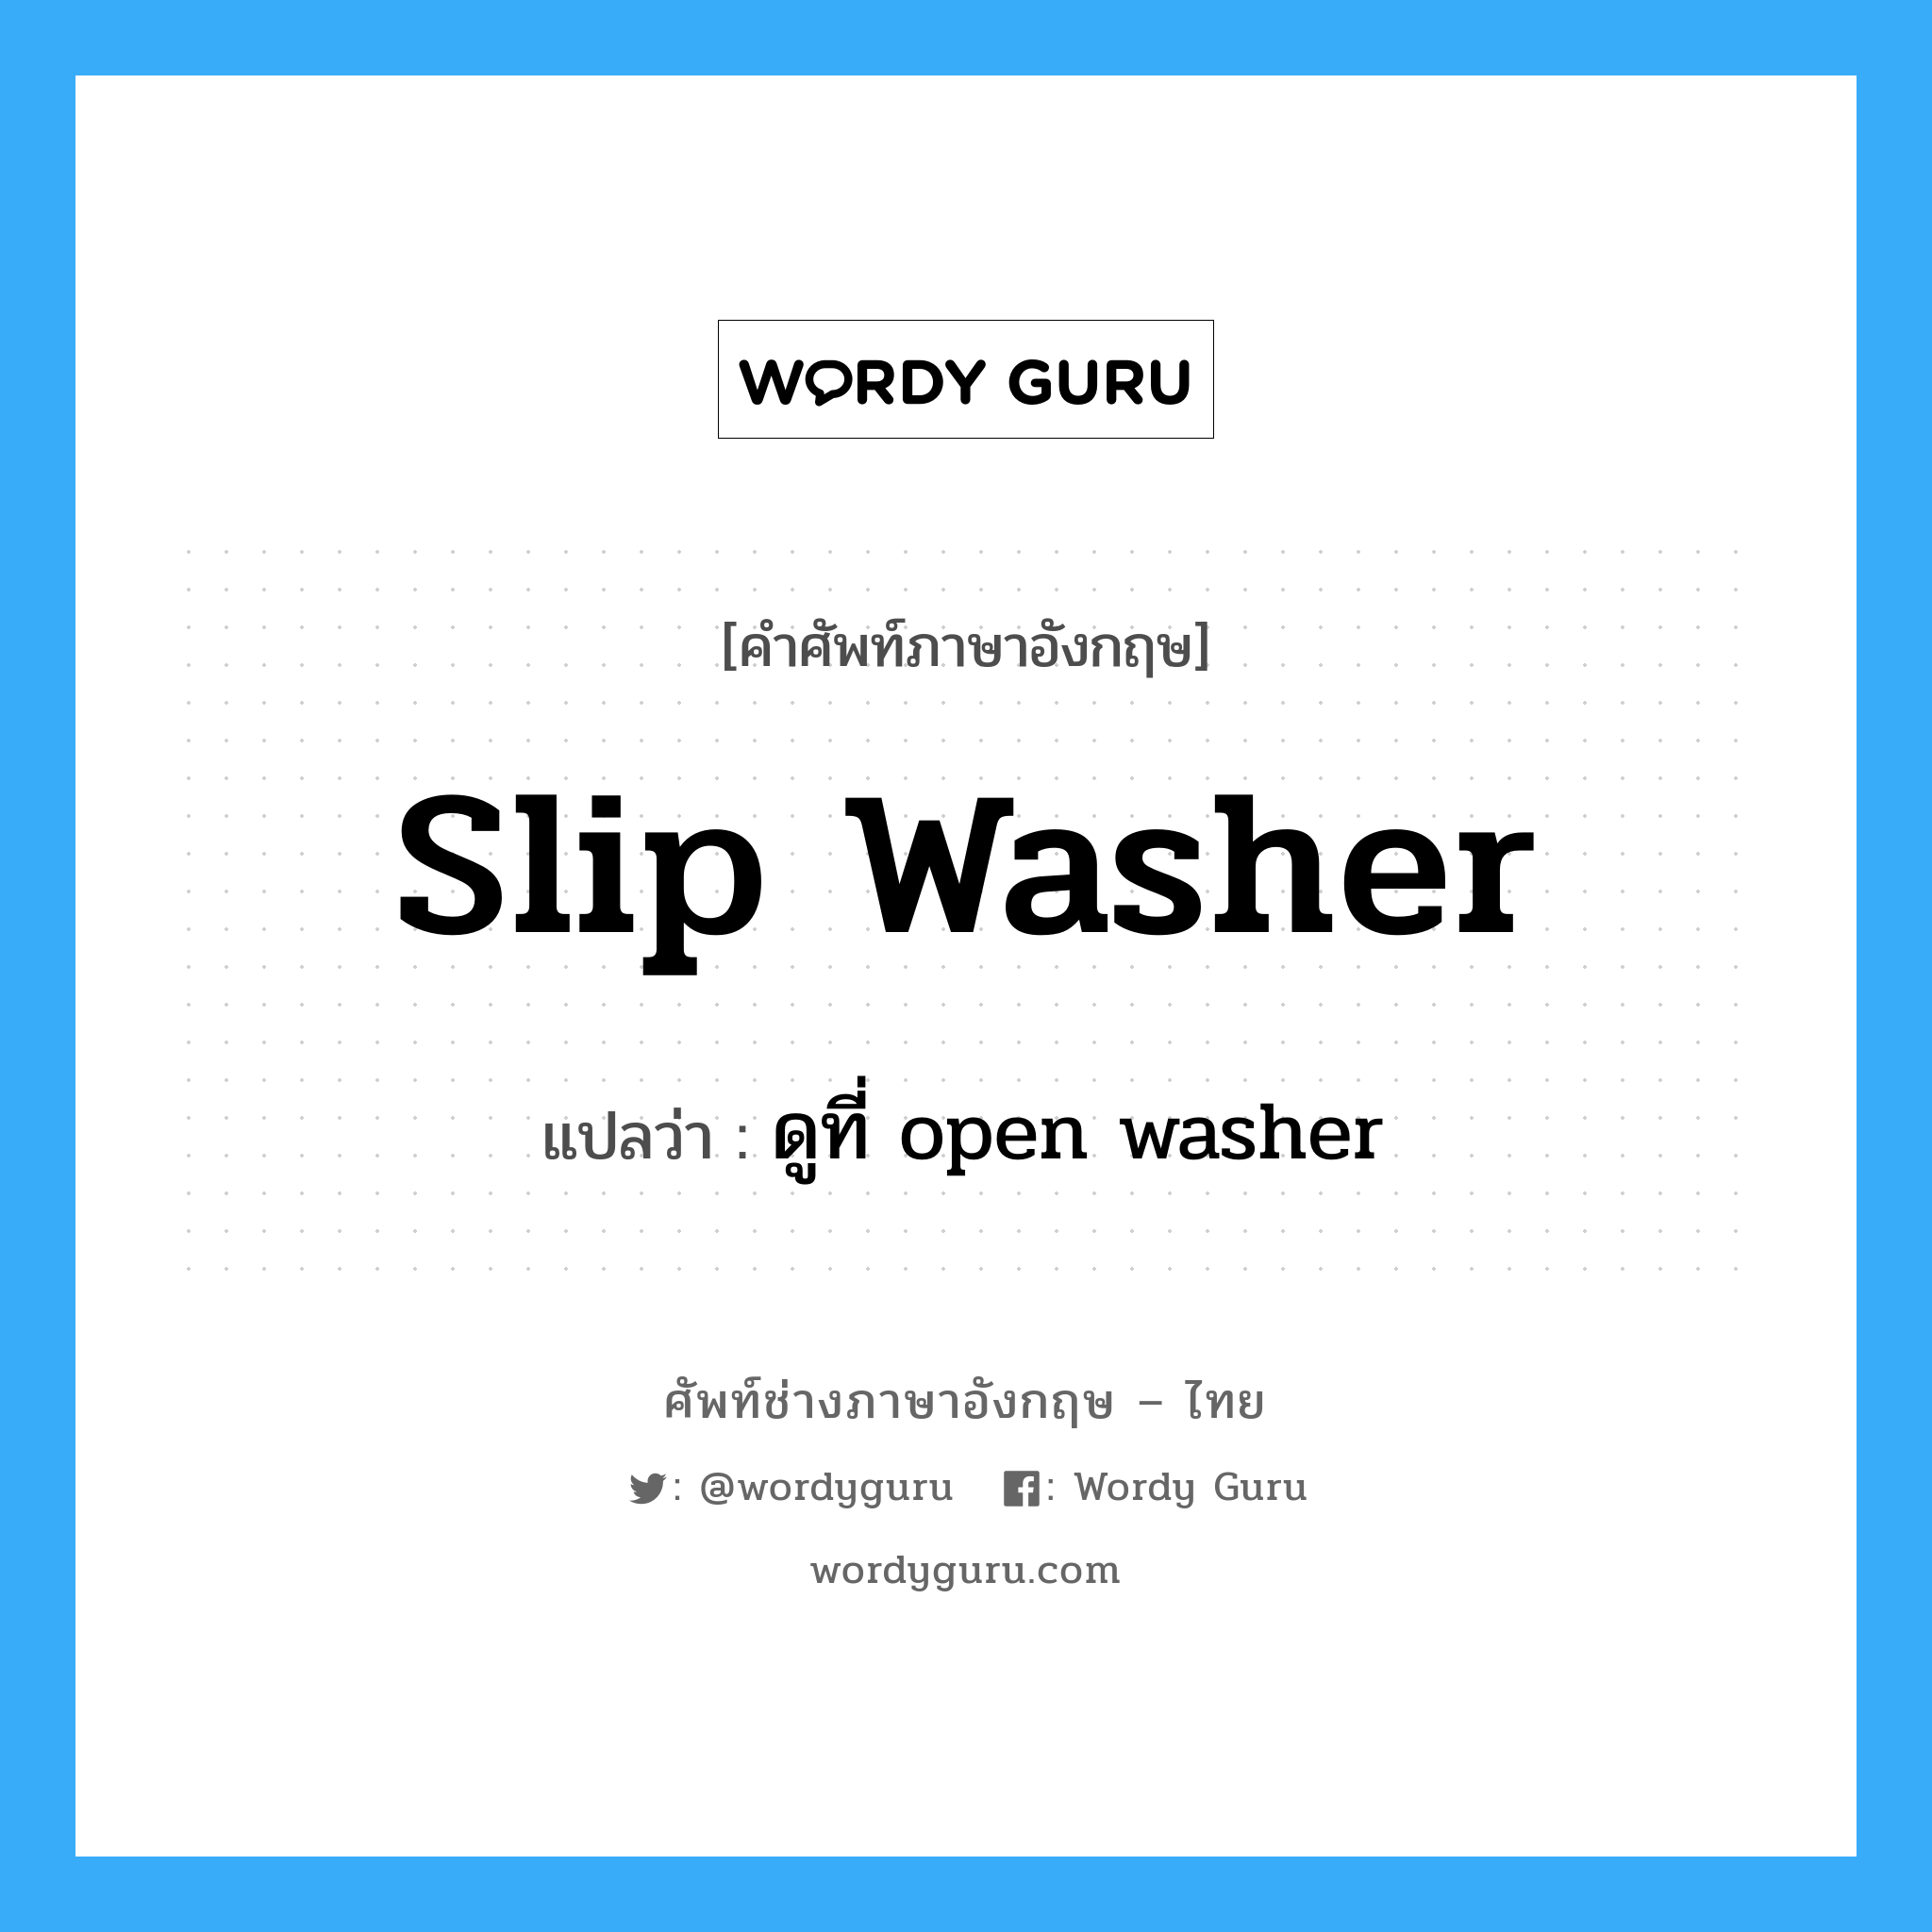 slip washer แปลว่า?, คำศัพท์ช่างภาษาอังกฤษ - ไทย slip washer คำศัพท์ภาษาอังกฤษ slip washer แปลว่า ดูที่ open washer